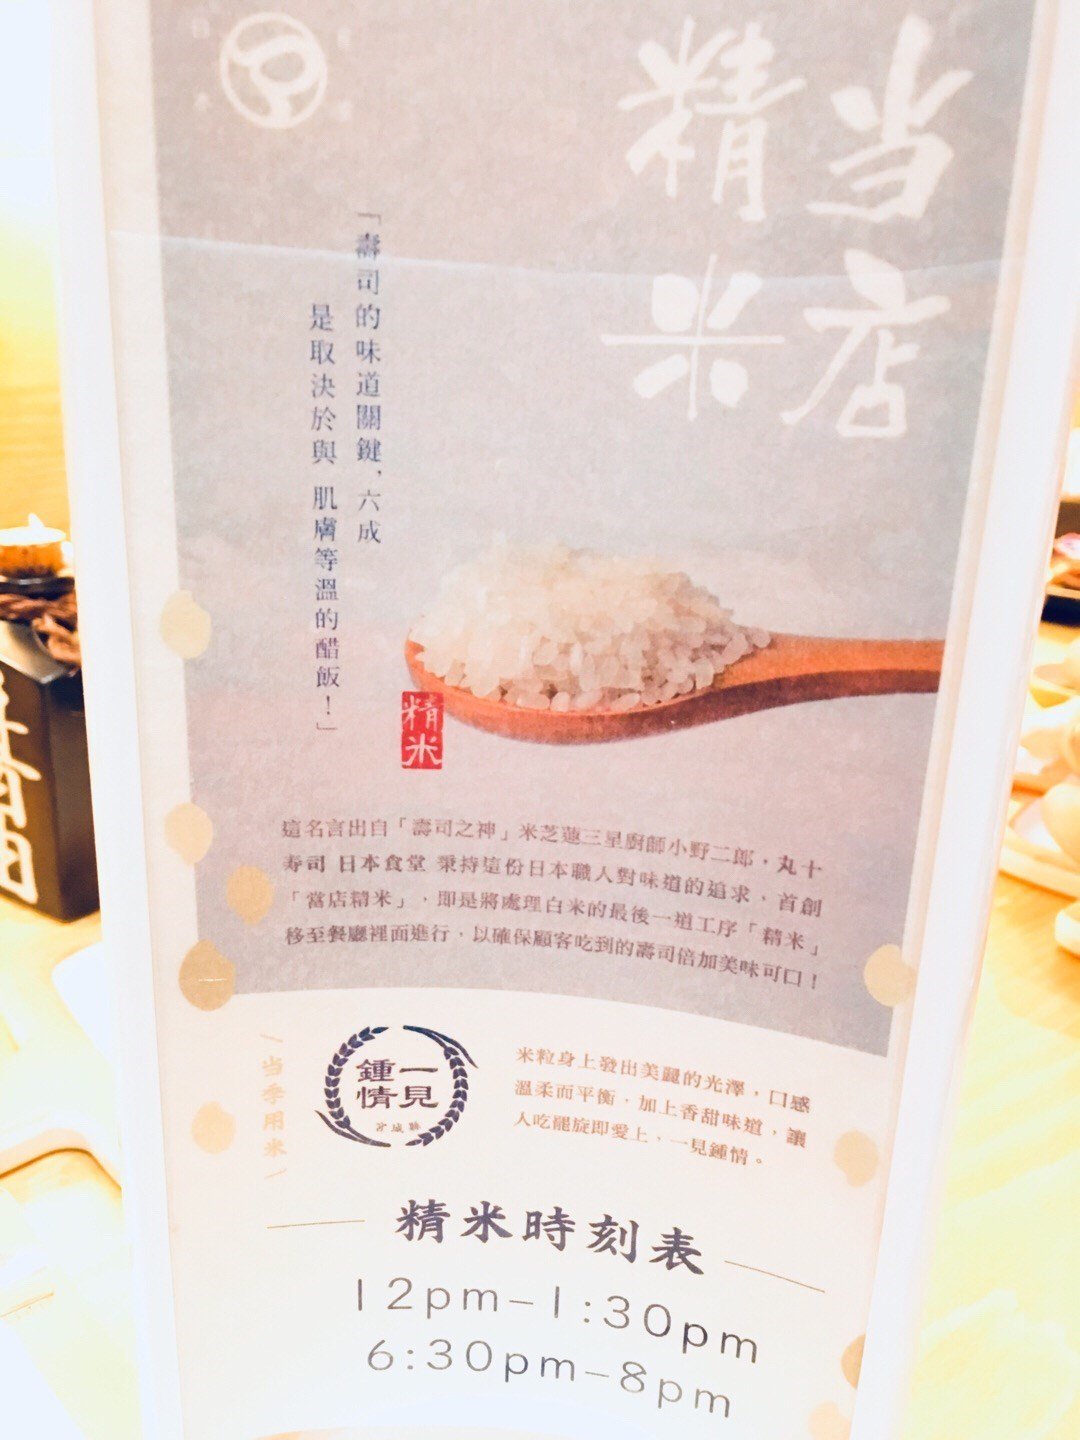 當店精米 Maruju Sushi Japanese Shokudo S Photo In Mong Kok Hong Kong Openrice Hong Kong